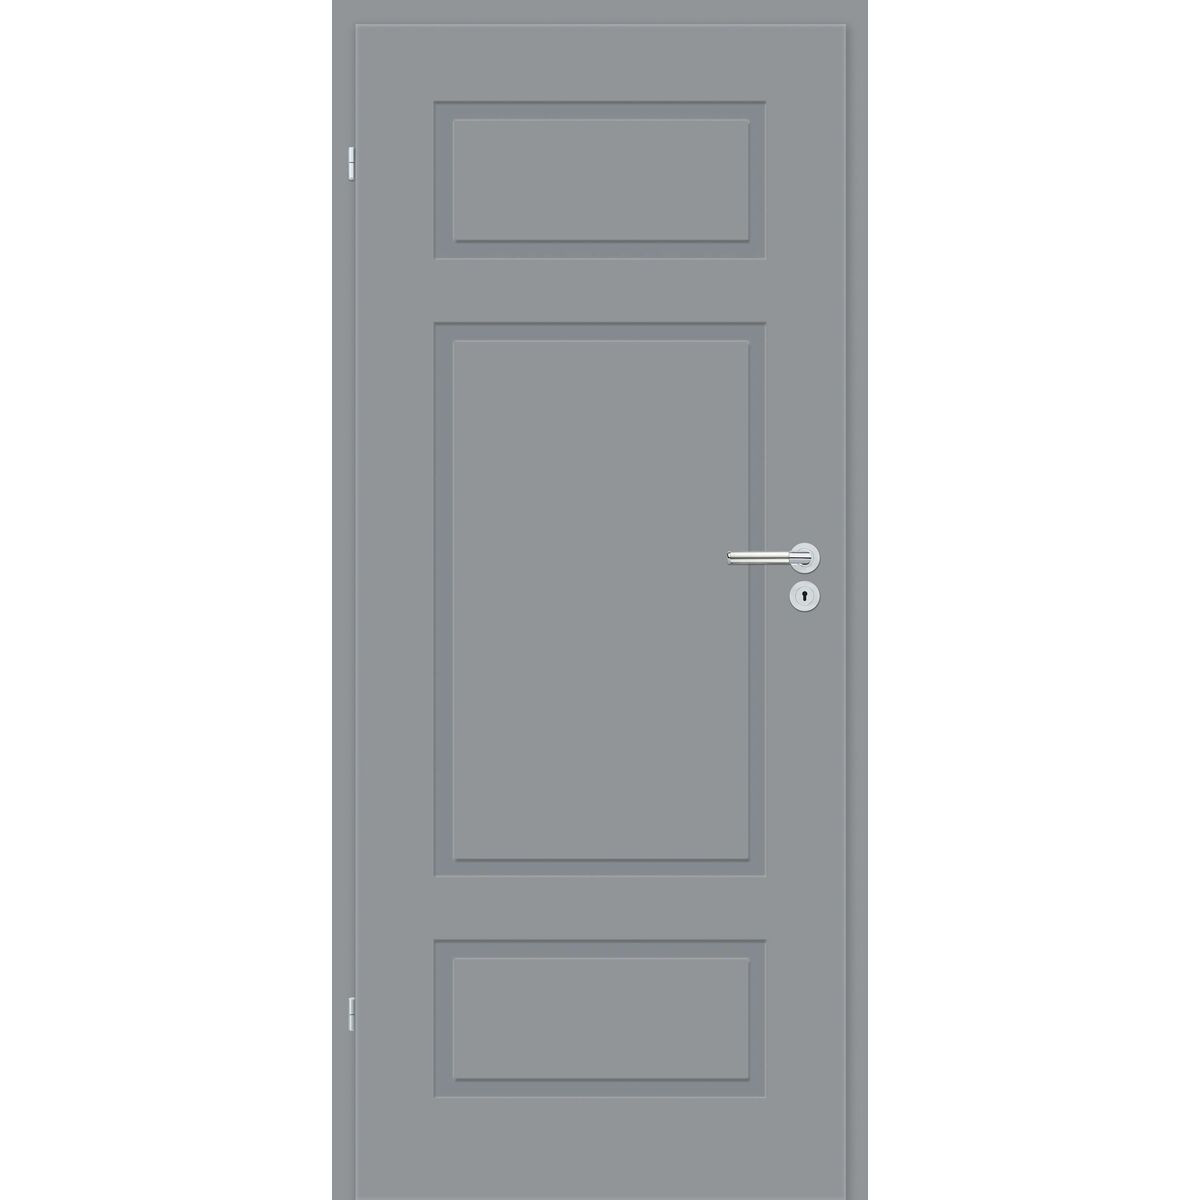 Drzwi wewnętrzne pełne Grifo Szary lakier 80 Lewe Classen